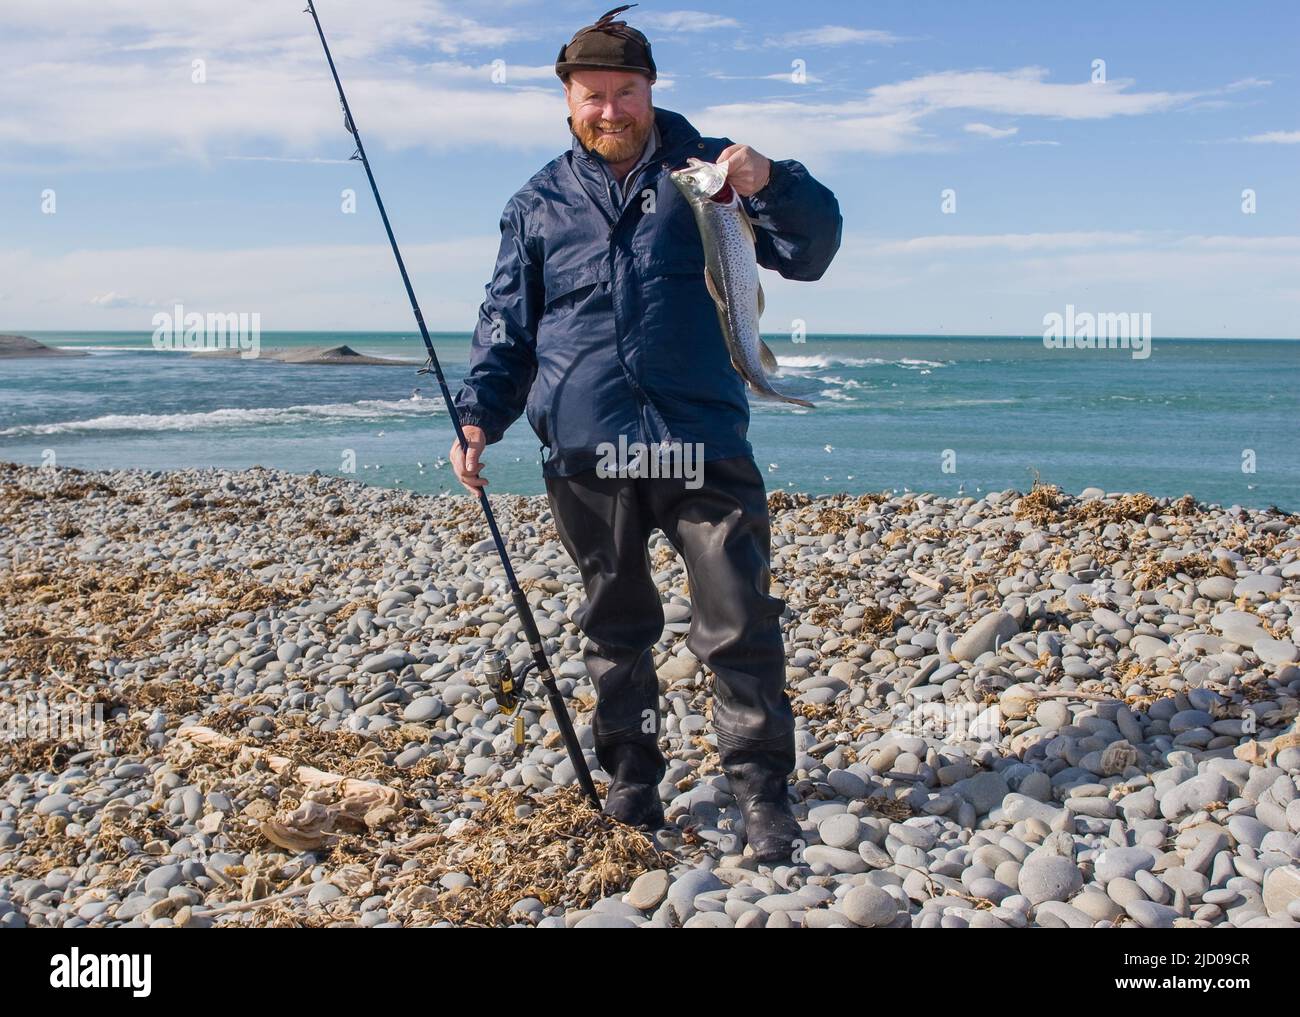 Ein Blick auf das Leben in Neuseeland. Angeln auf Searun Forelle. Diese Fische sind an den meisten Stellen zu finden, an denen ein Fluss ins Meer fließt. Ausgezeichnetes Essen. Stockfoto